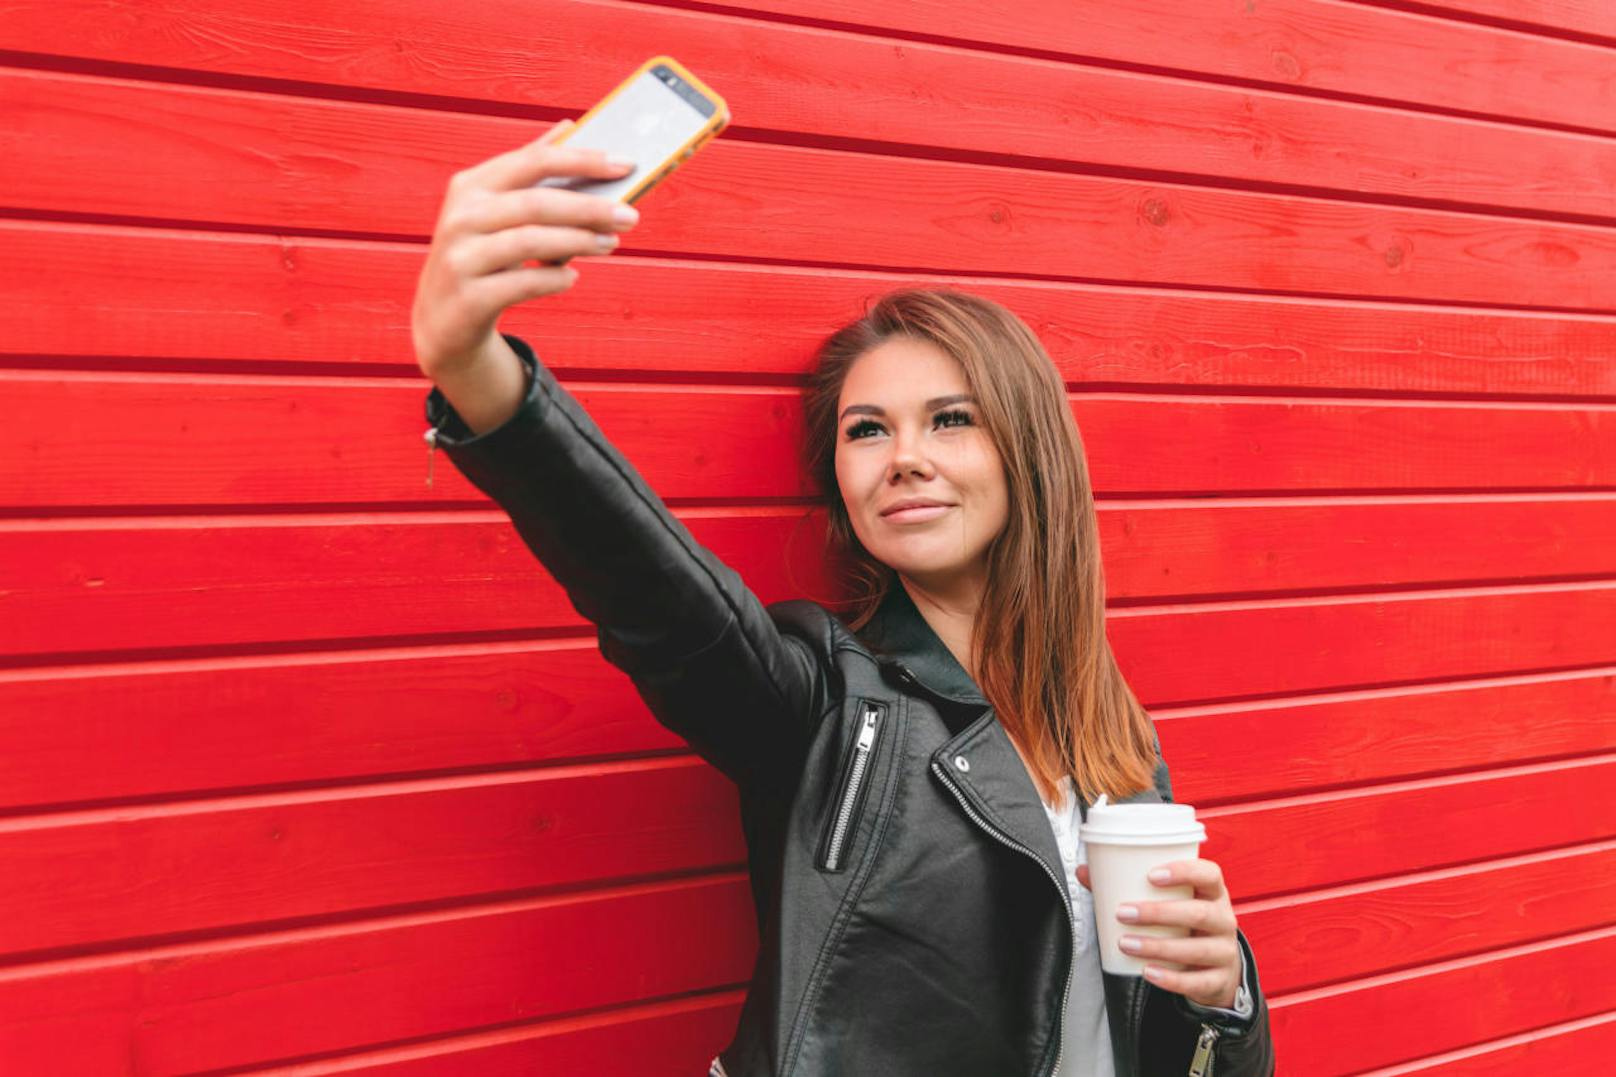 Wie nun Forscher der Universität Bamberg herausgefunden haben, ist beim Selfie alles eine Frage der Perspektive. Laut den Wissenschaftlern wirken Selfies von links oben aufgenommen am schönsten.